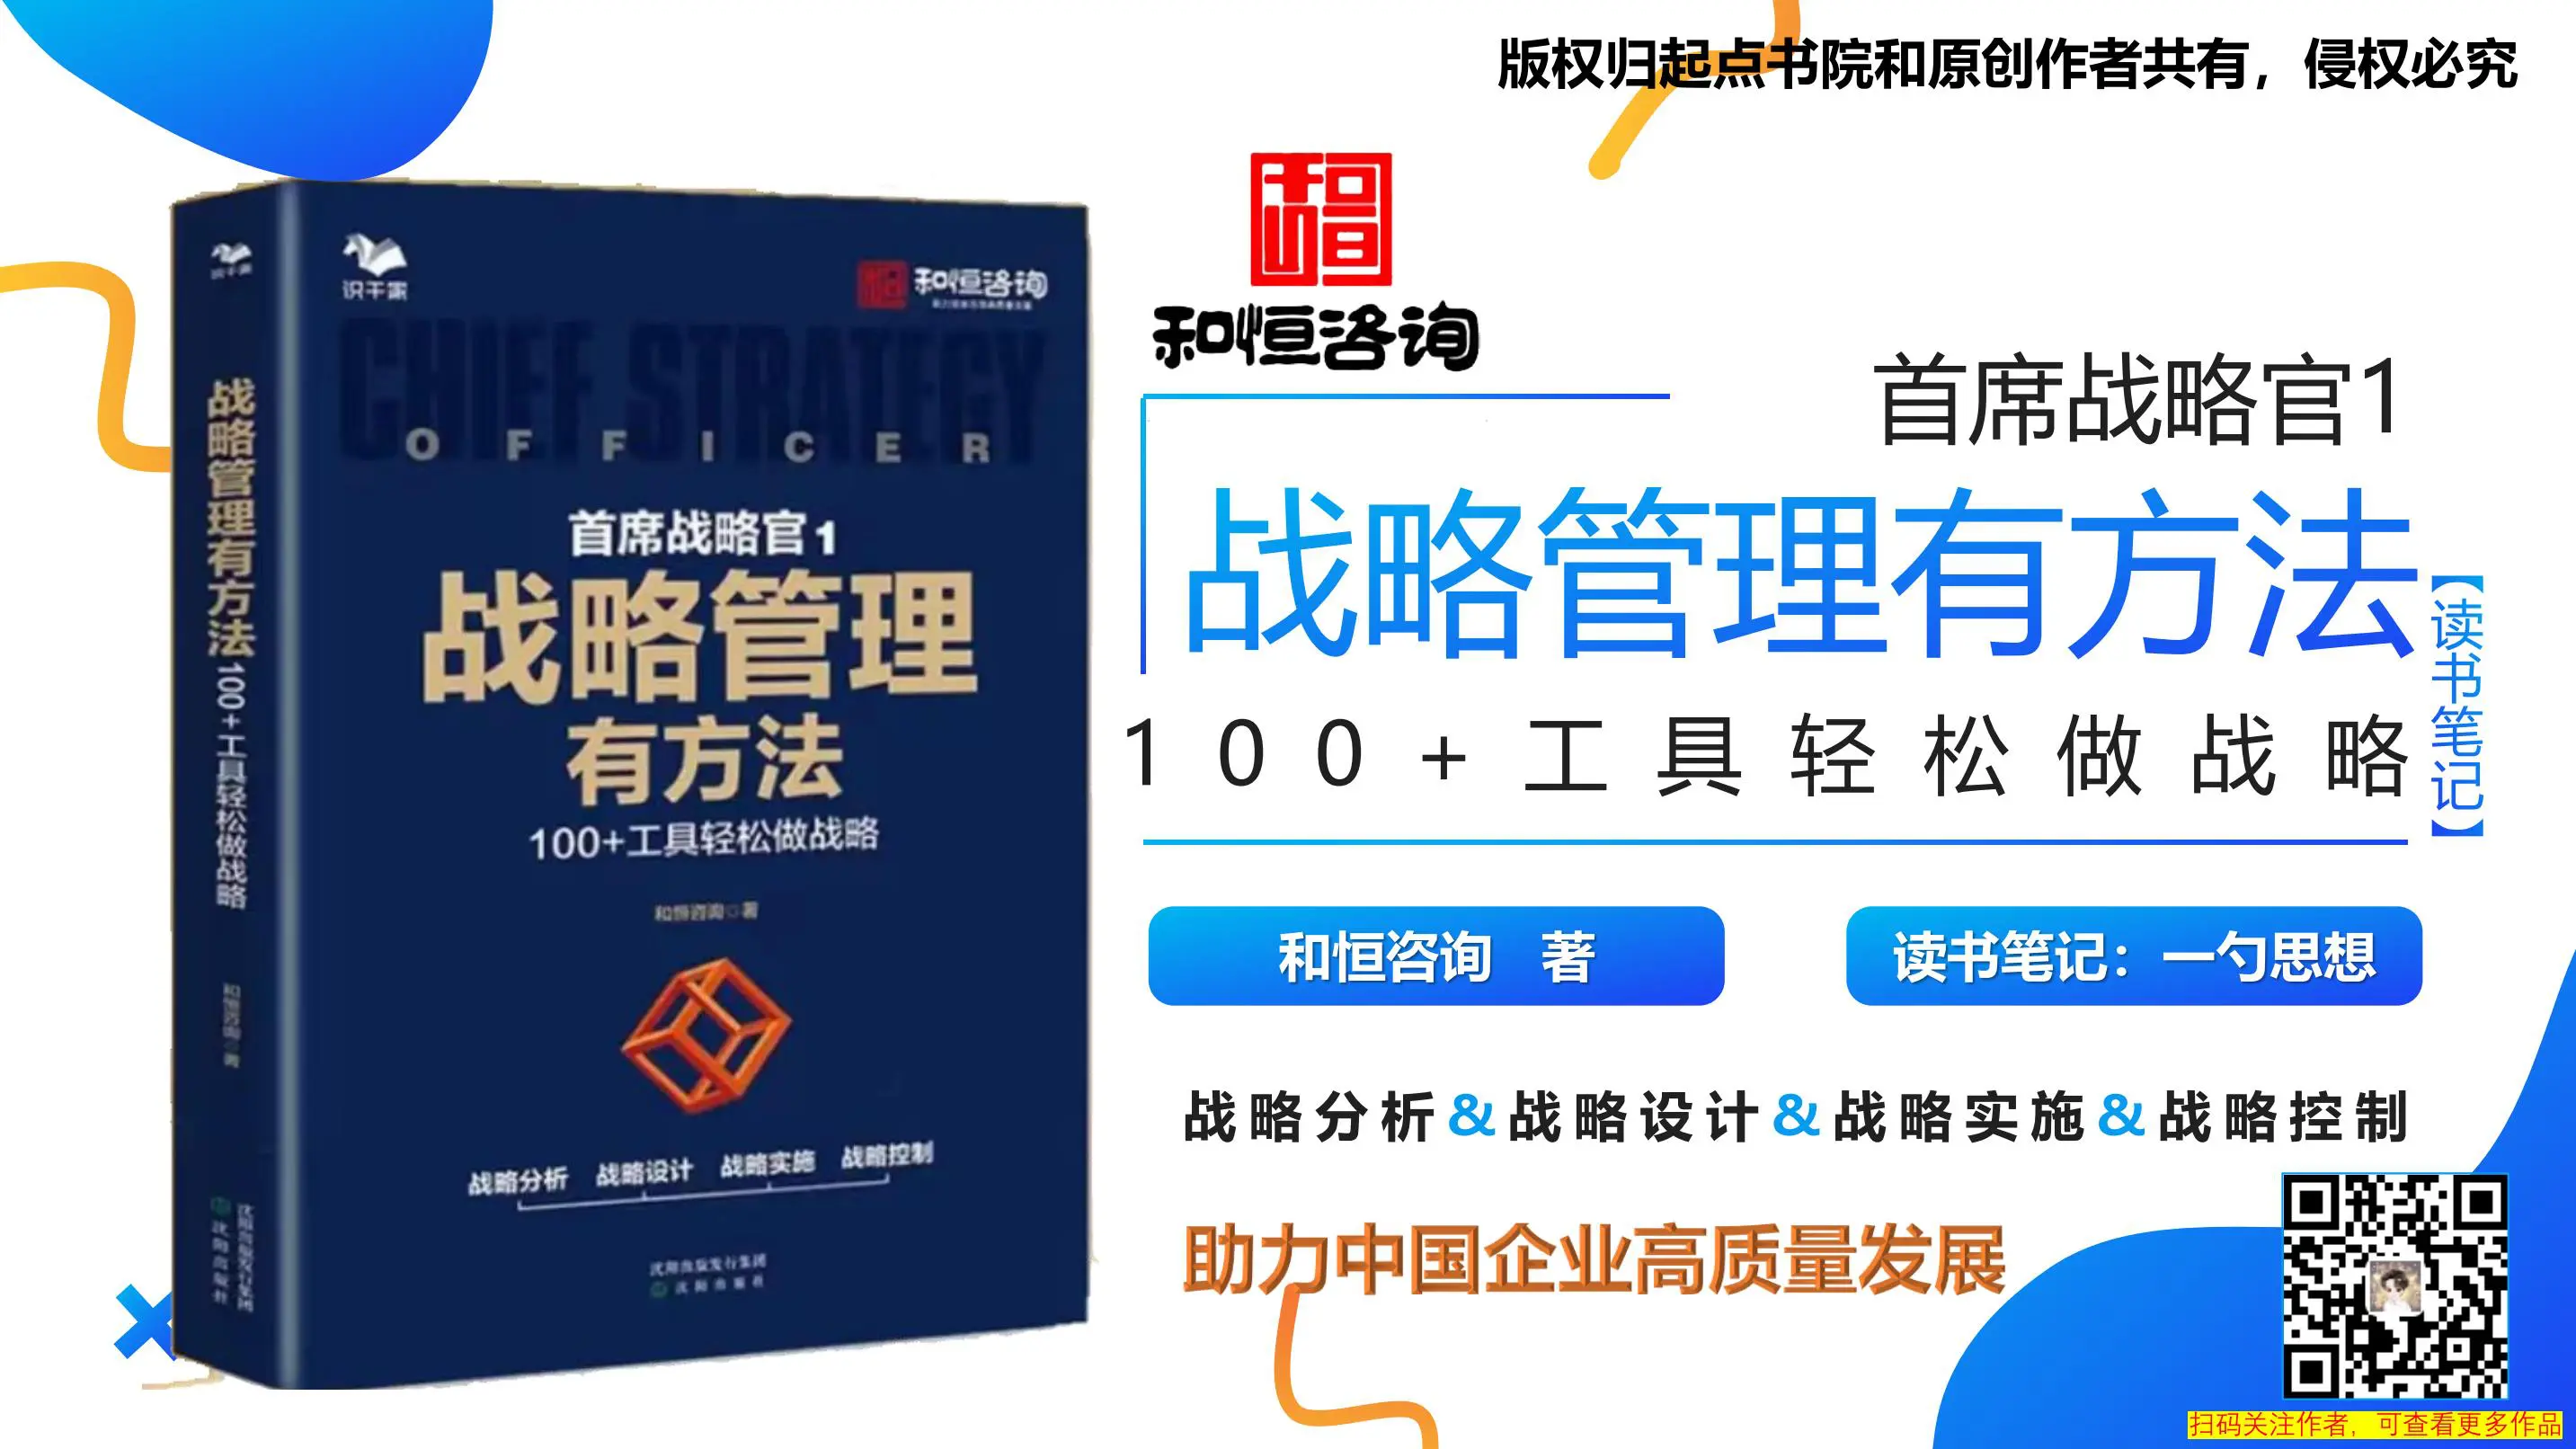 《战略管理有方法：100+工具轻松做战略》助力中国企业高质量发展 – 读书笔记 by 一勺思想插图1